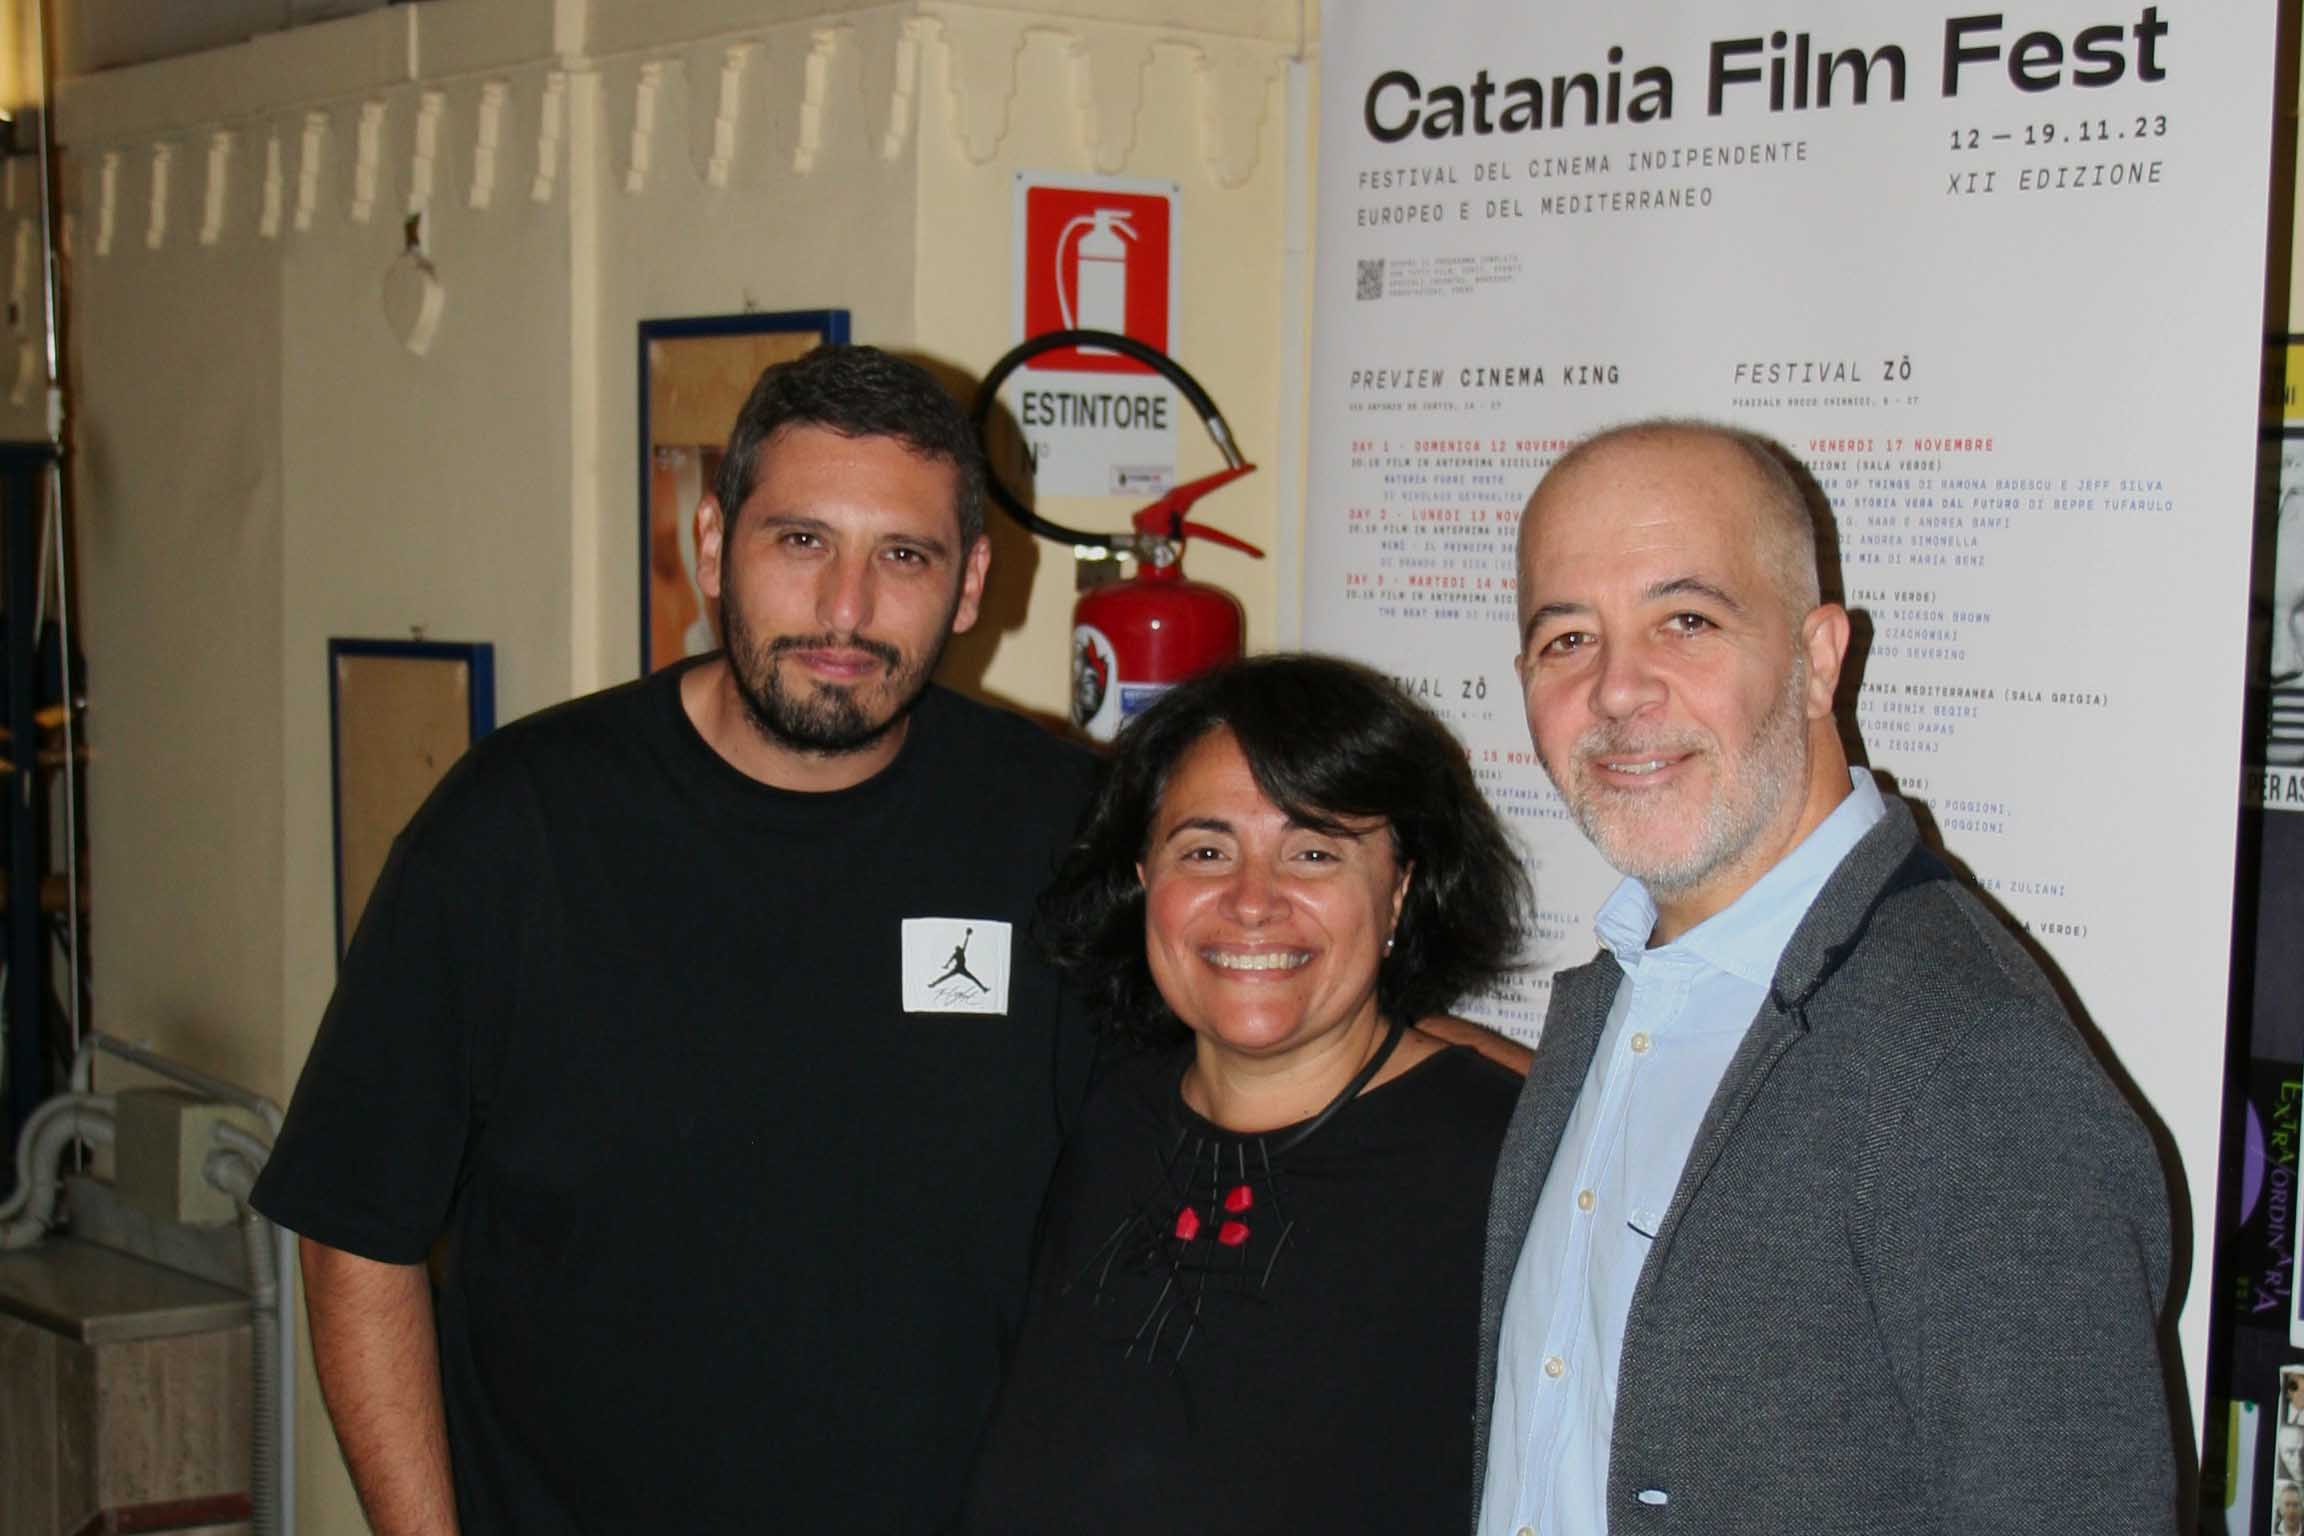 La docente Stefania Rimini presente alla preview del Catania Film Festival 2023 con i direttori Daniele Urciuolo e Cateno Piazza